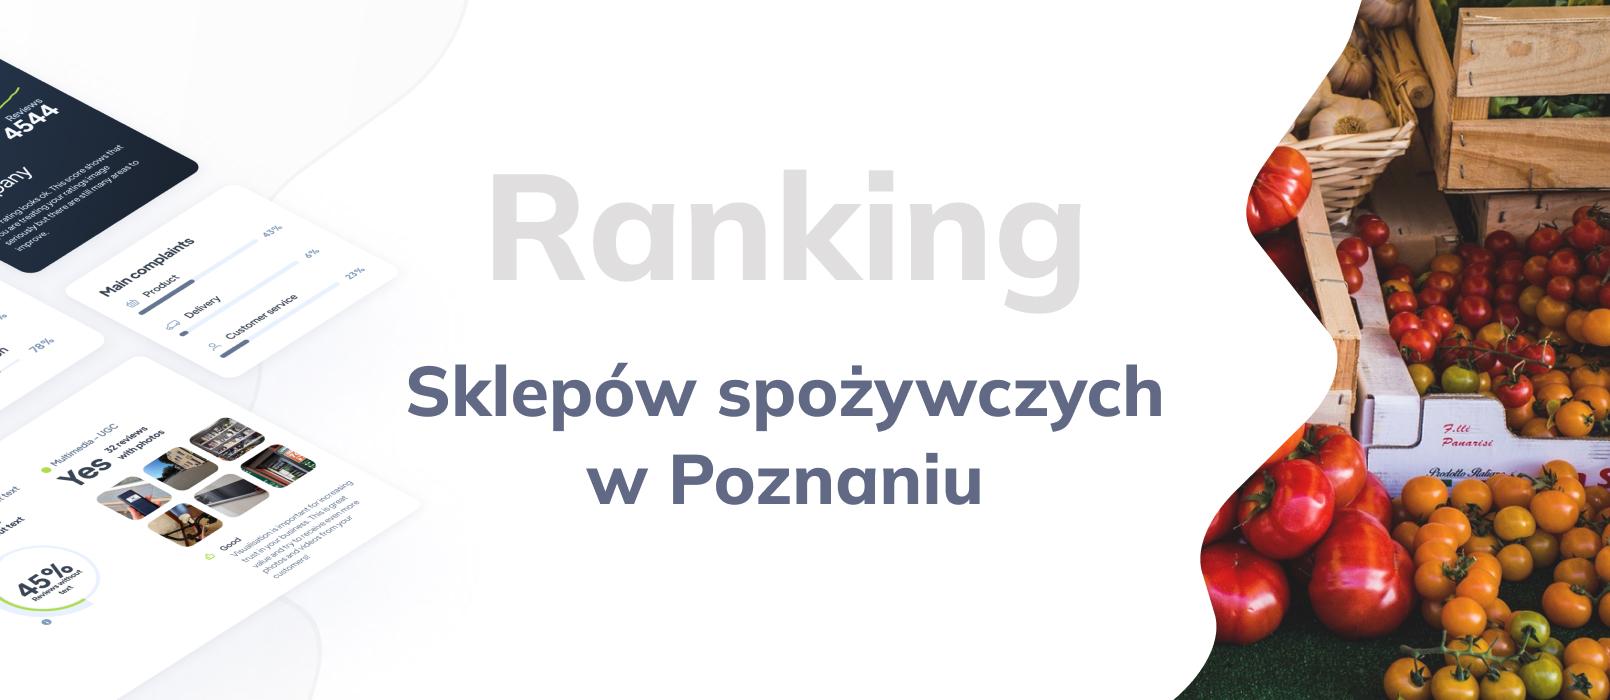 Sklepy spożywcze w Poznaniu - ranking TOP 10